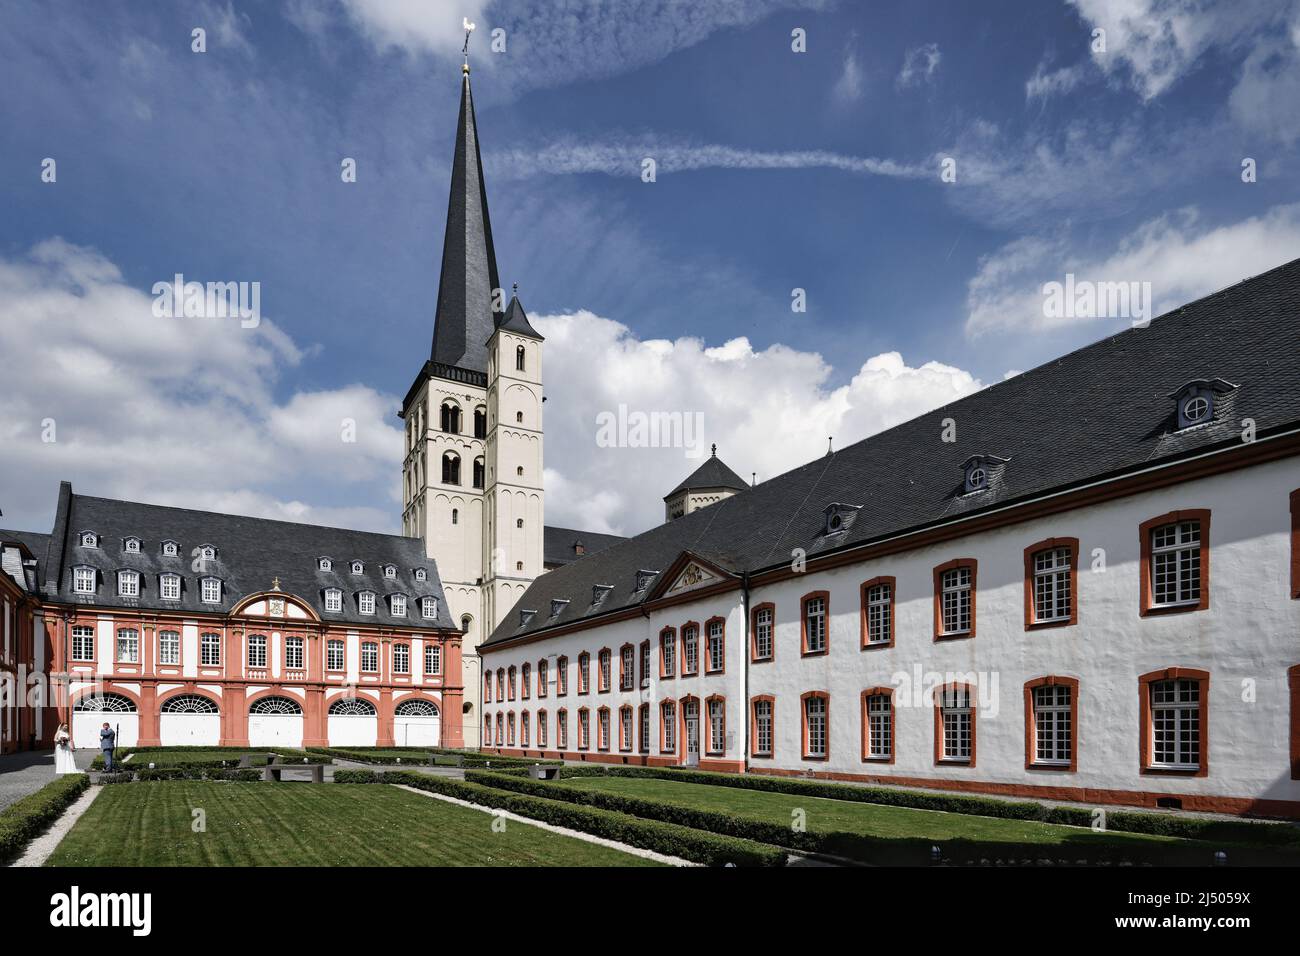 Abbazia di Brauweiler un ex monastero benedettino situato nelle vicinanze di colonia Foto Stock